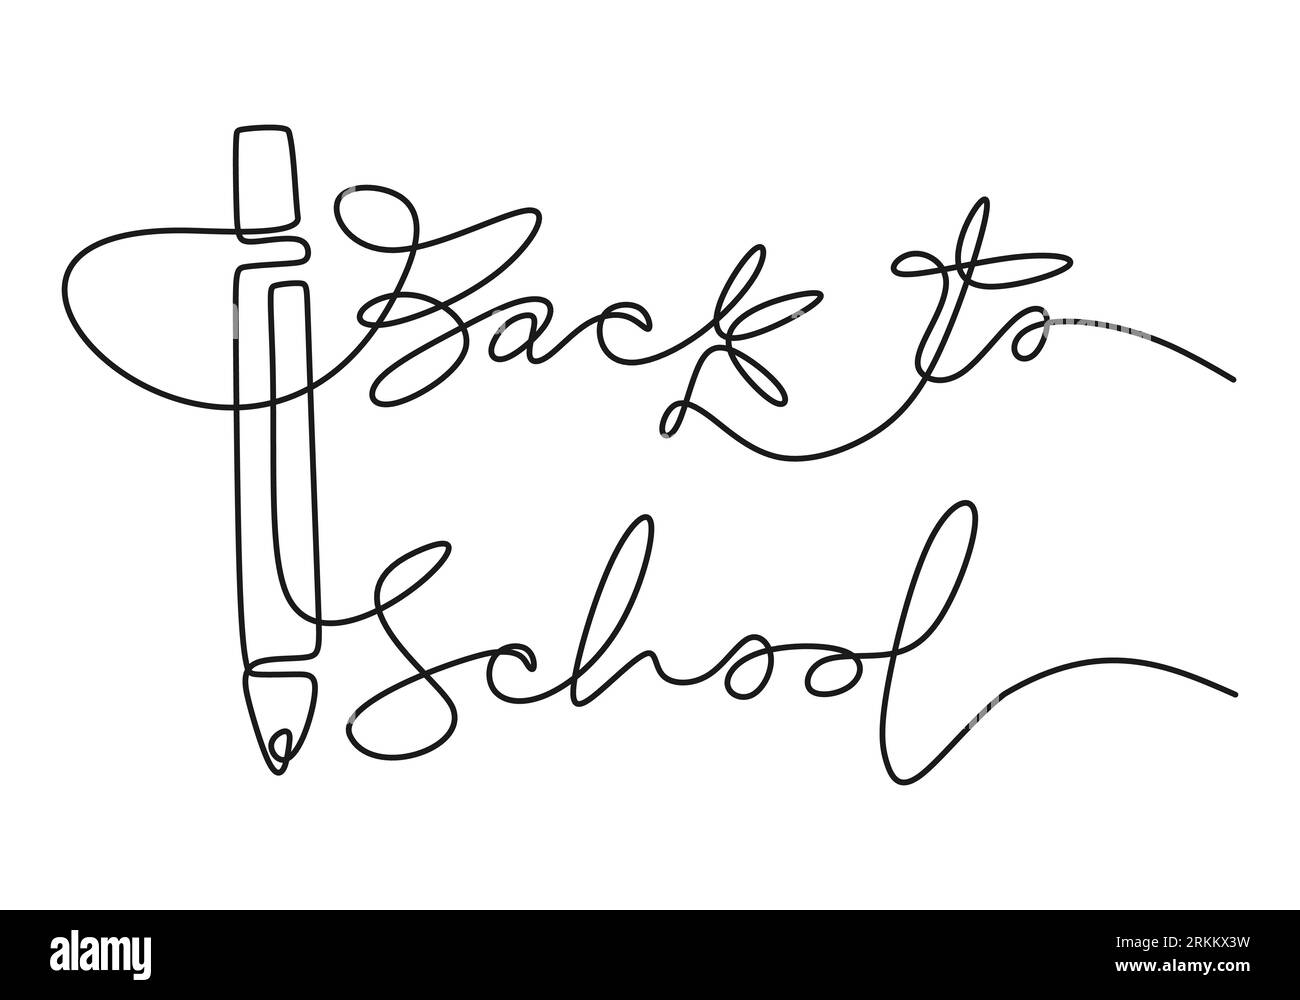 Disegno continuo a una riga di parole scritte a mano "ritorno a scuola" con matita grande isolata su sfondo bianco. Illustrazione Vettoriale